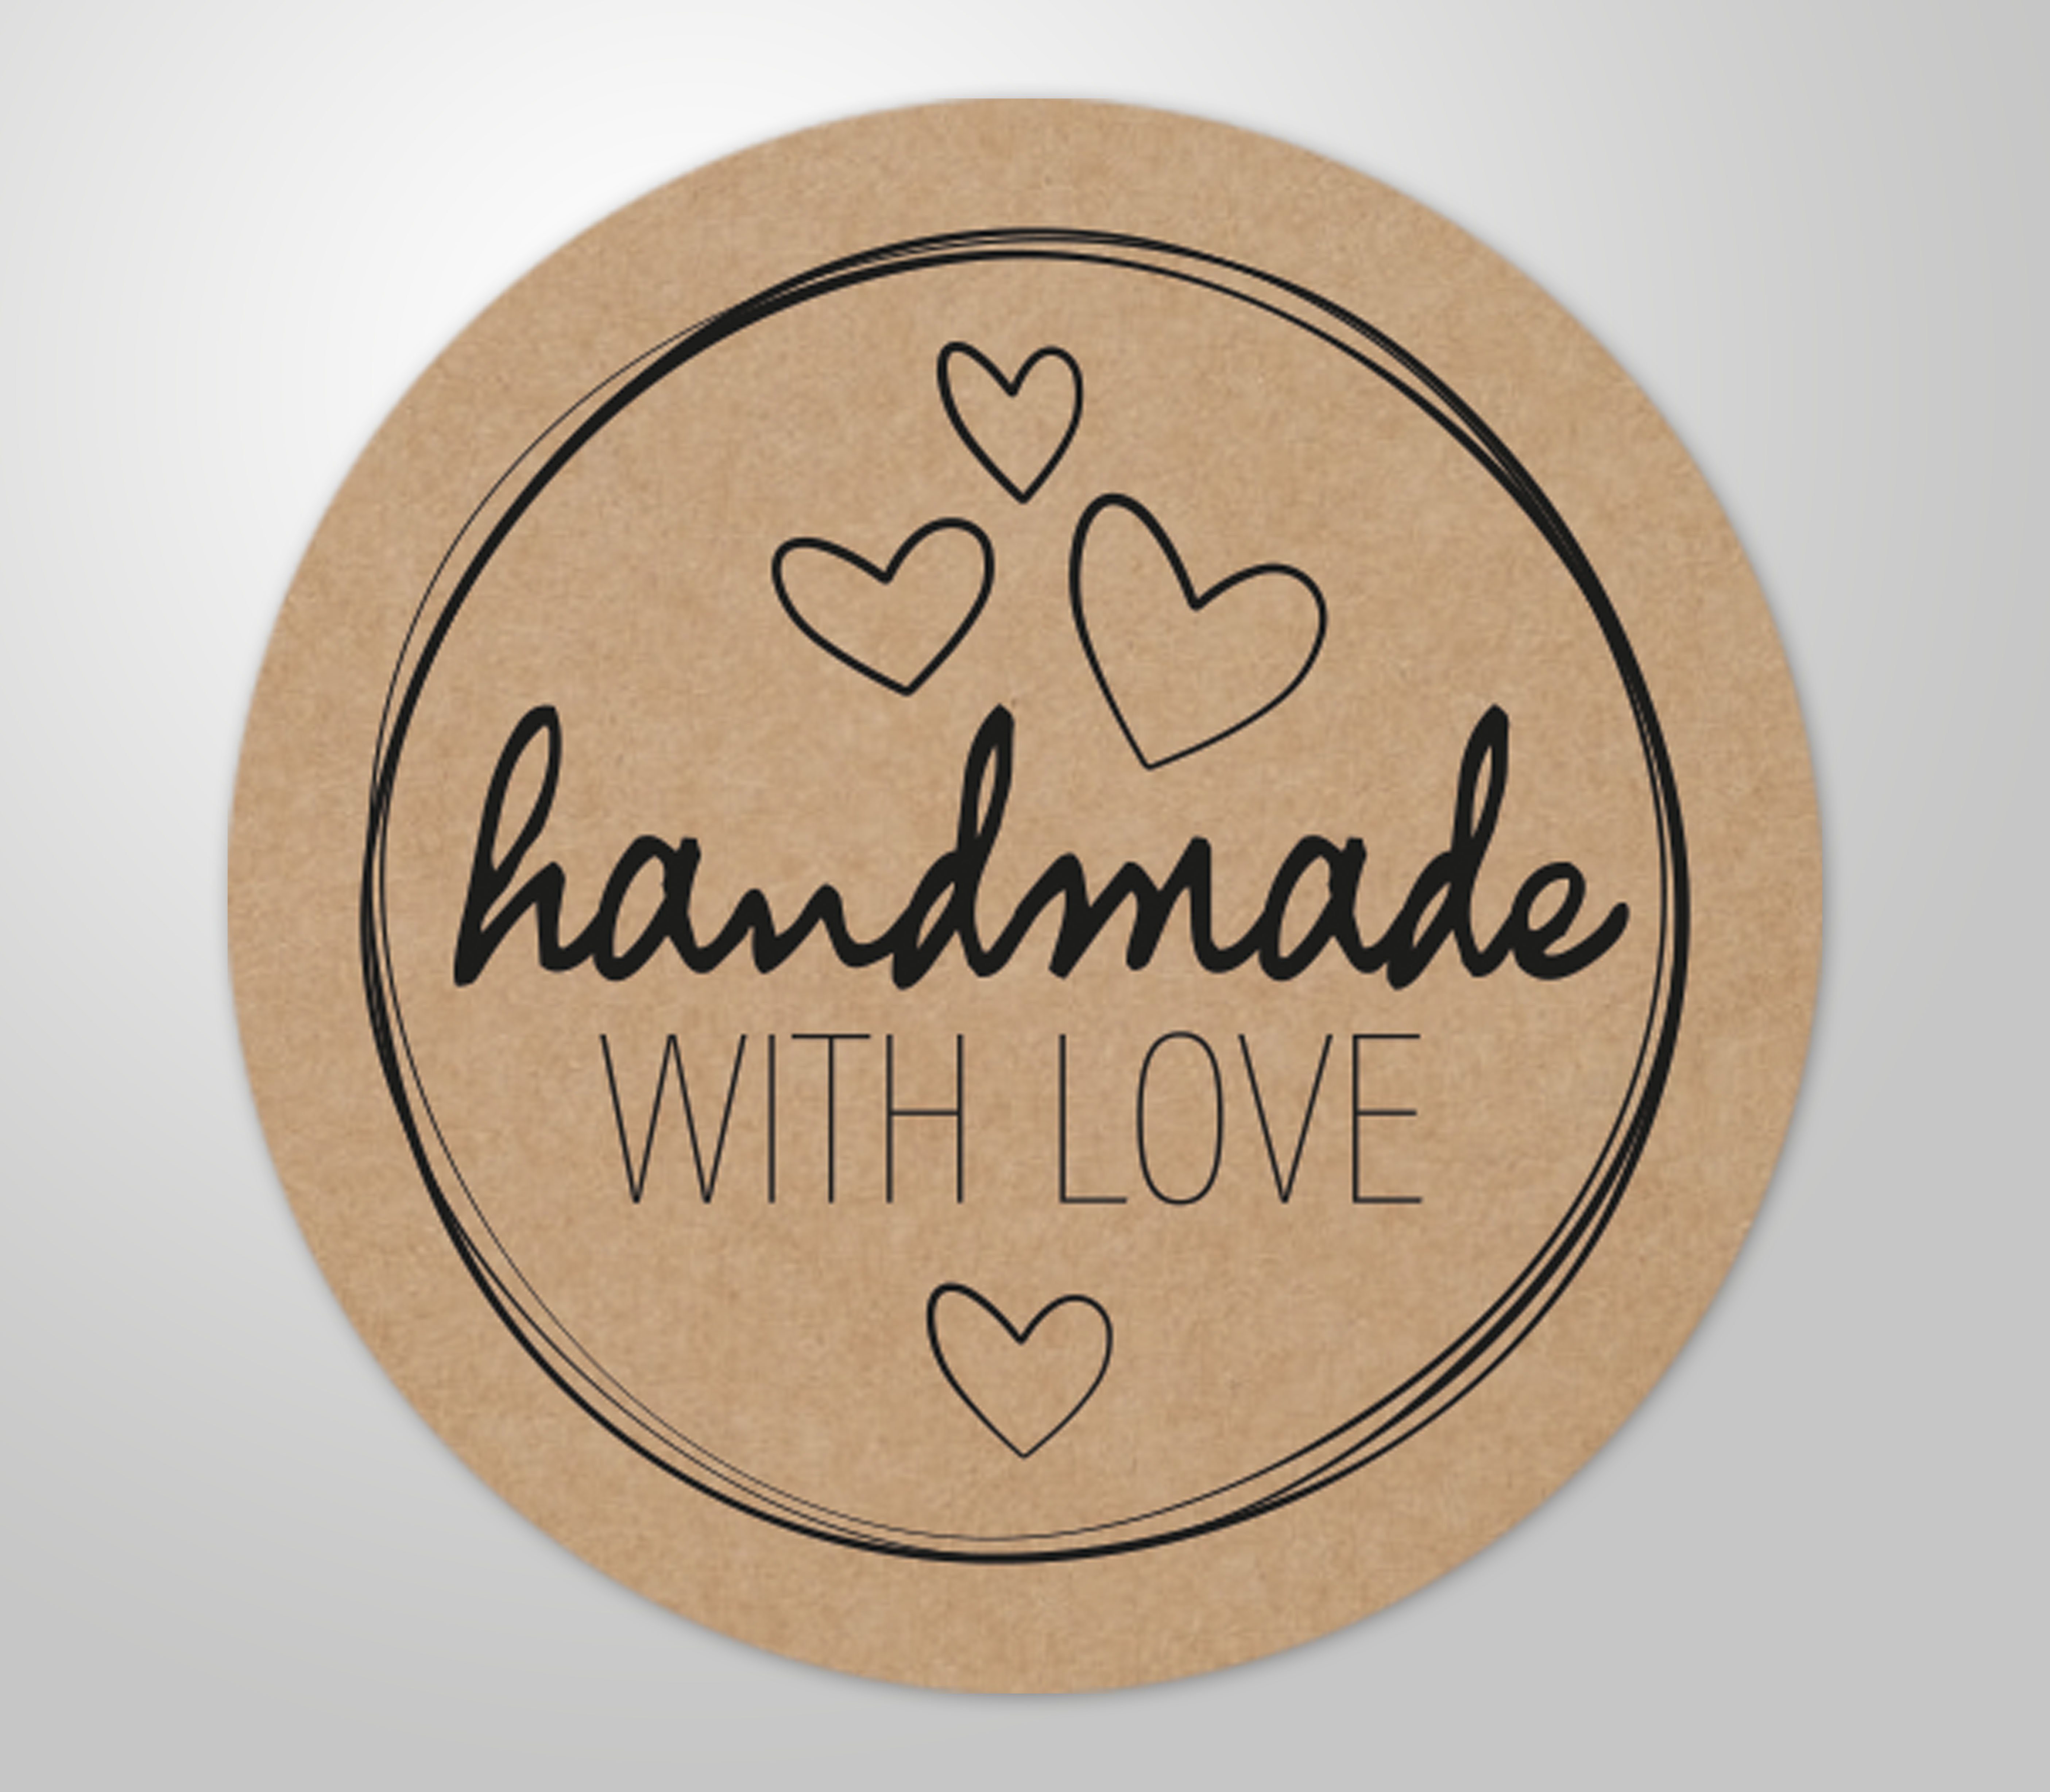 Clever-Kauf-24 Etiketten 48 Stück selbstklebende hochwertige Etiketten "Handmade with love", handmade WITH LOVE